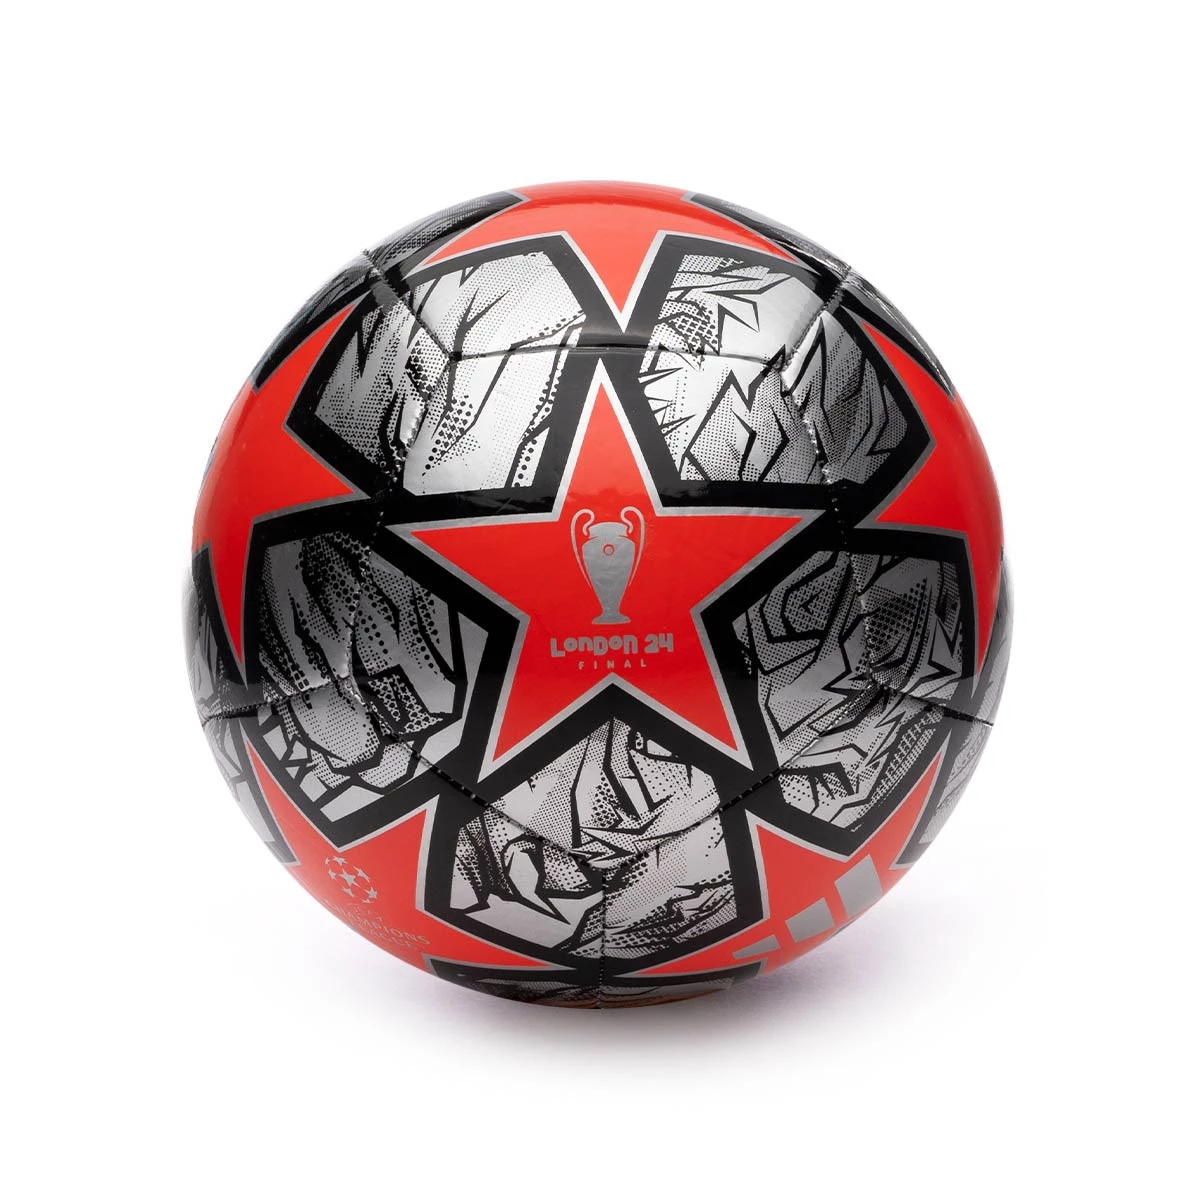 El nuevo balón de la UEFA Champions League 23/24 - Blogs - Fútbol Emotion